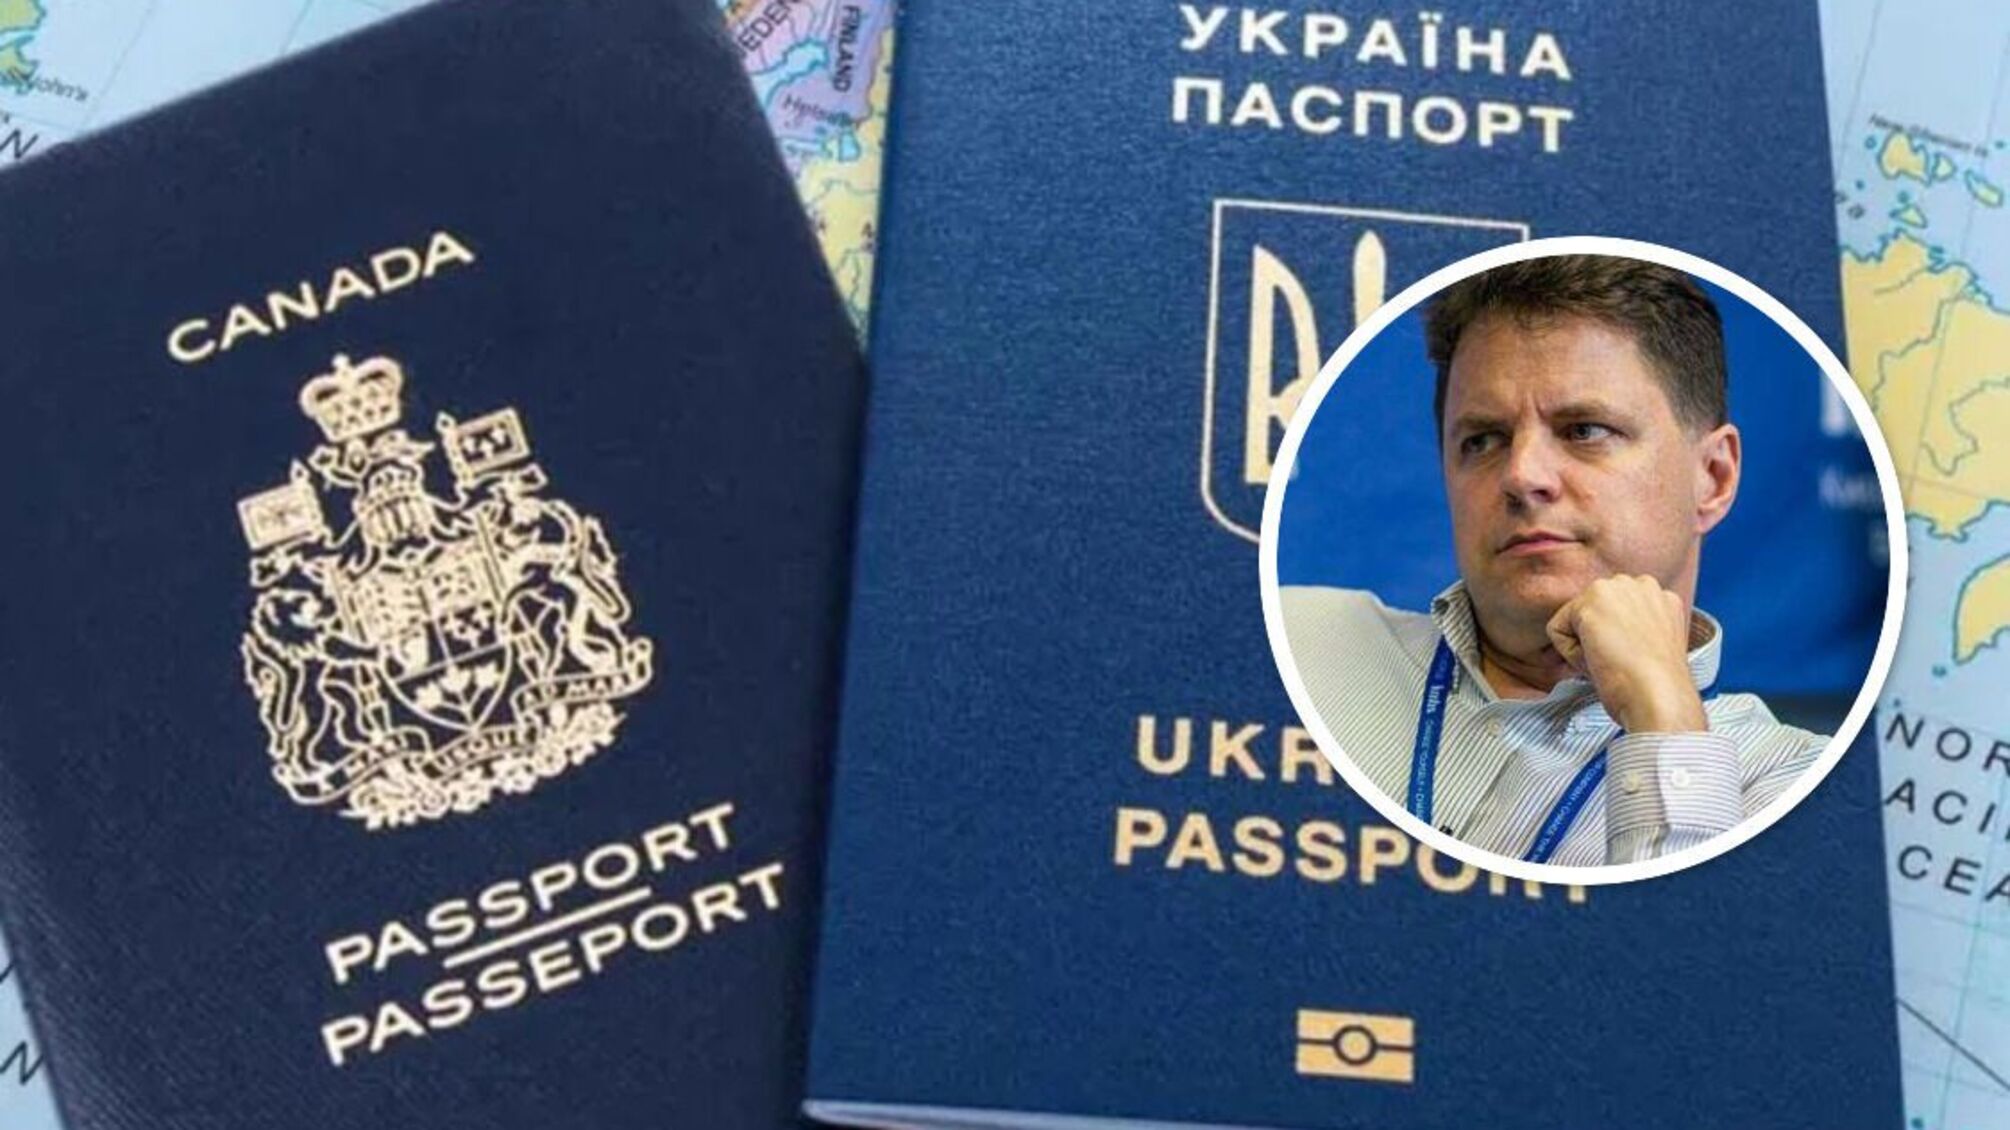 Заступник міністра освіти Вінницький може приховувати подвійне громадянство, – журналіст